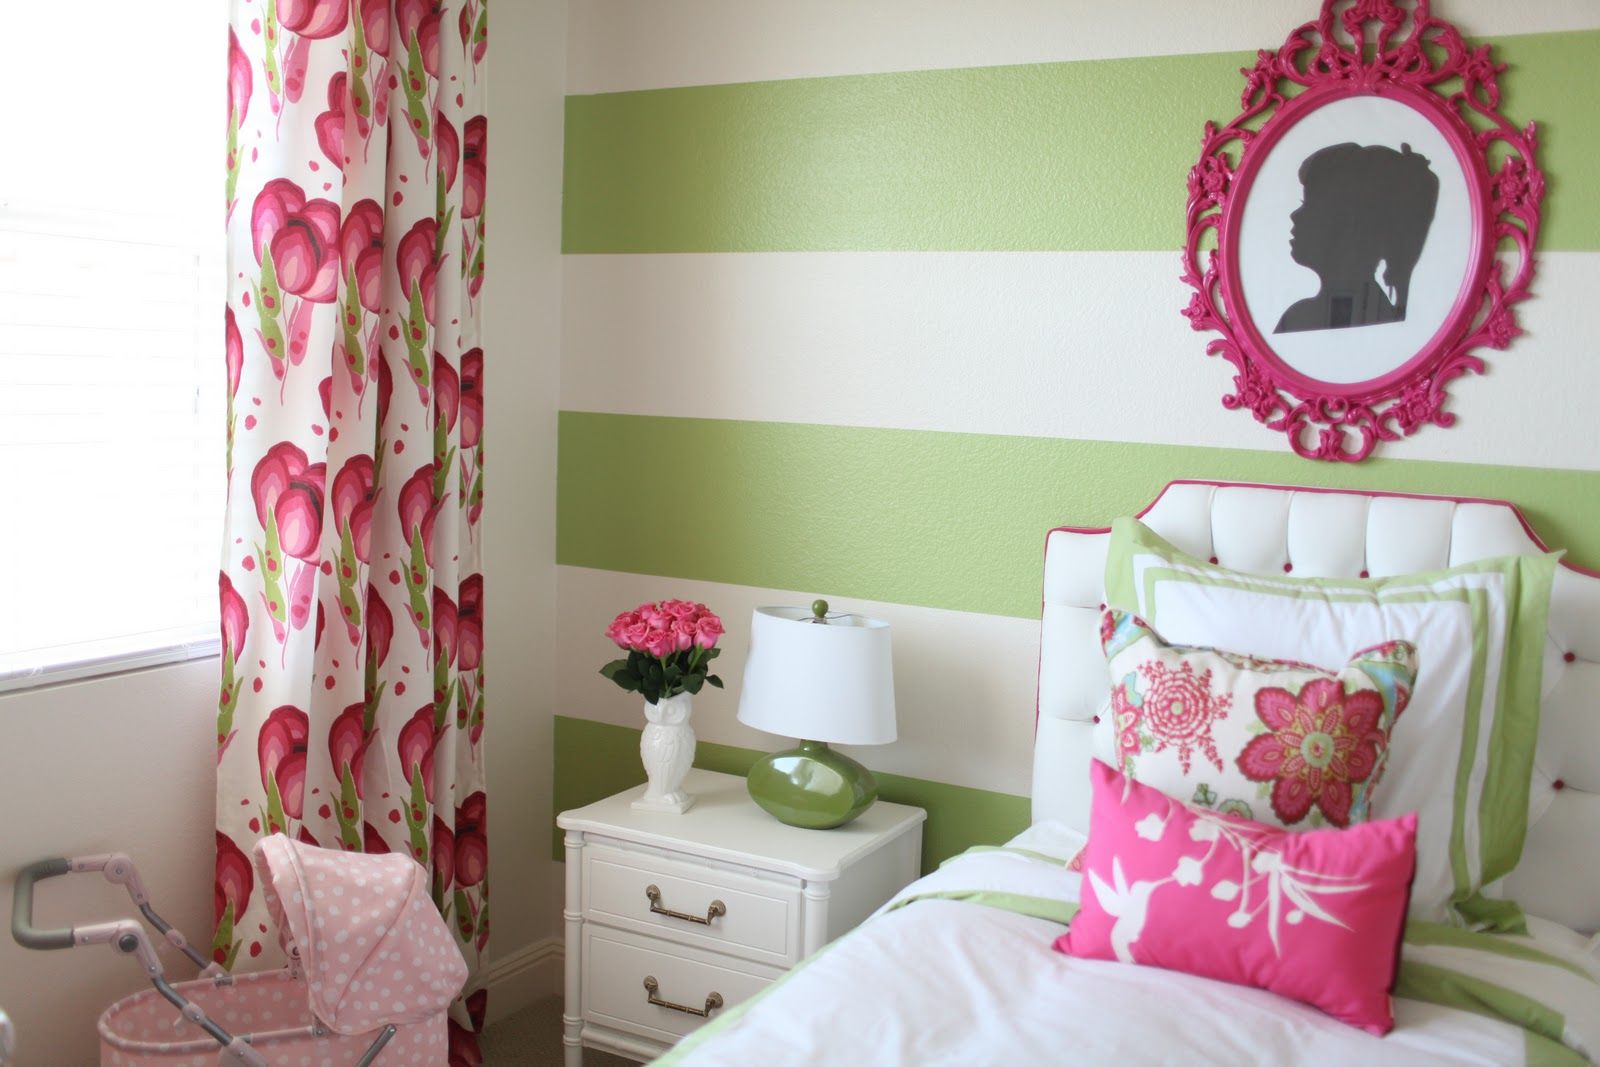 Photo 10 - Papier peint à larges rayures vertes dans la chambre pour la fille 